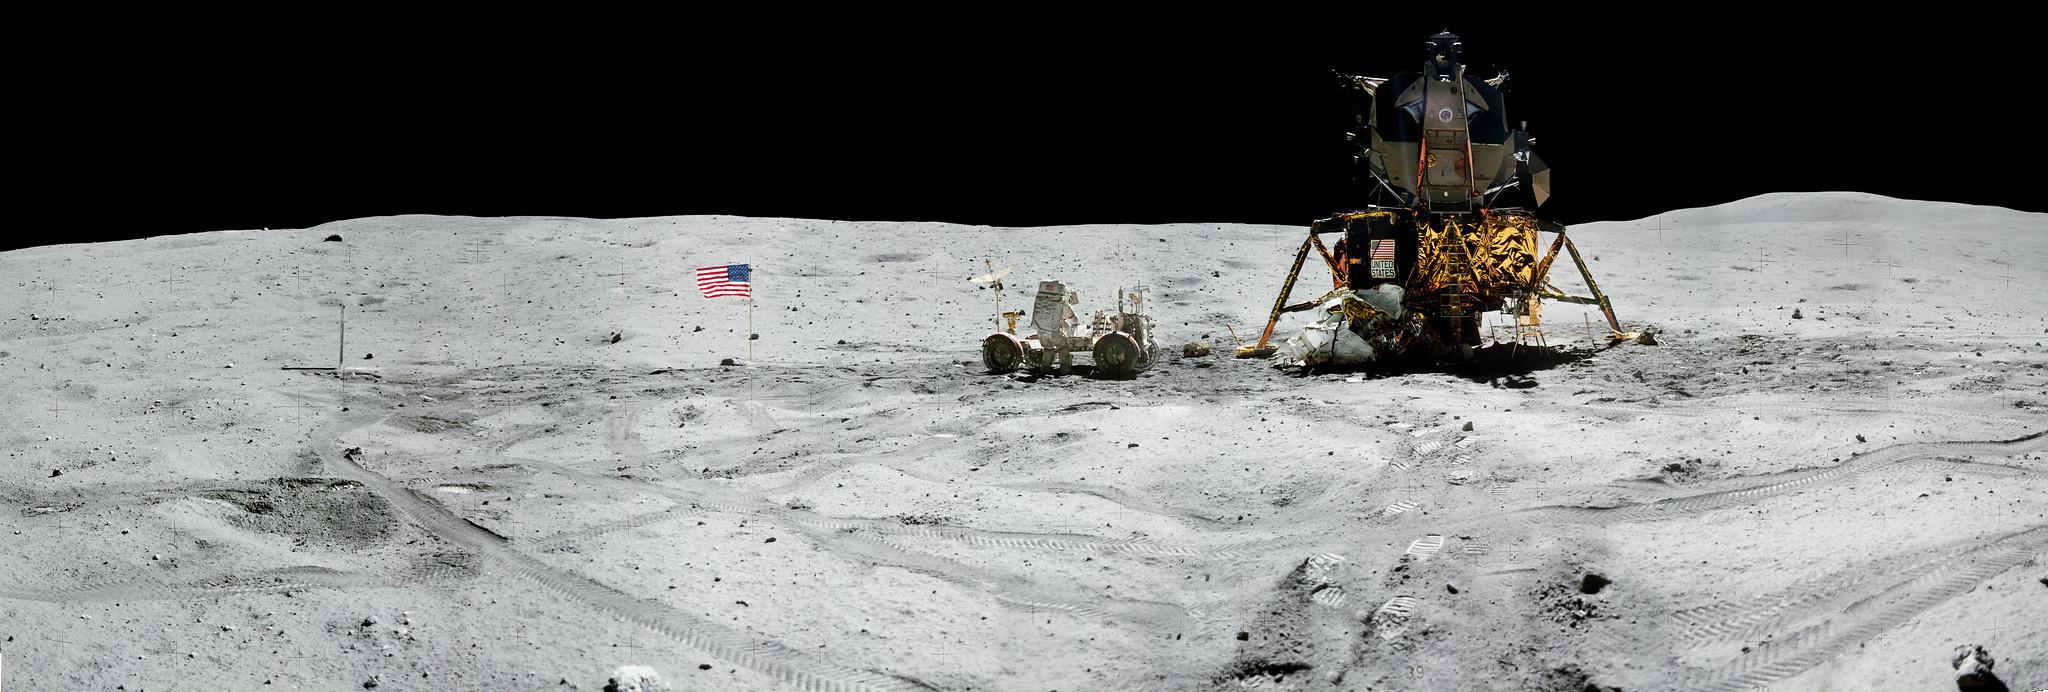 Hihetetlen panorámafotókat tett közzé a NASA a Holdra szállás ötvenedik évfordulójára